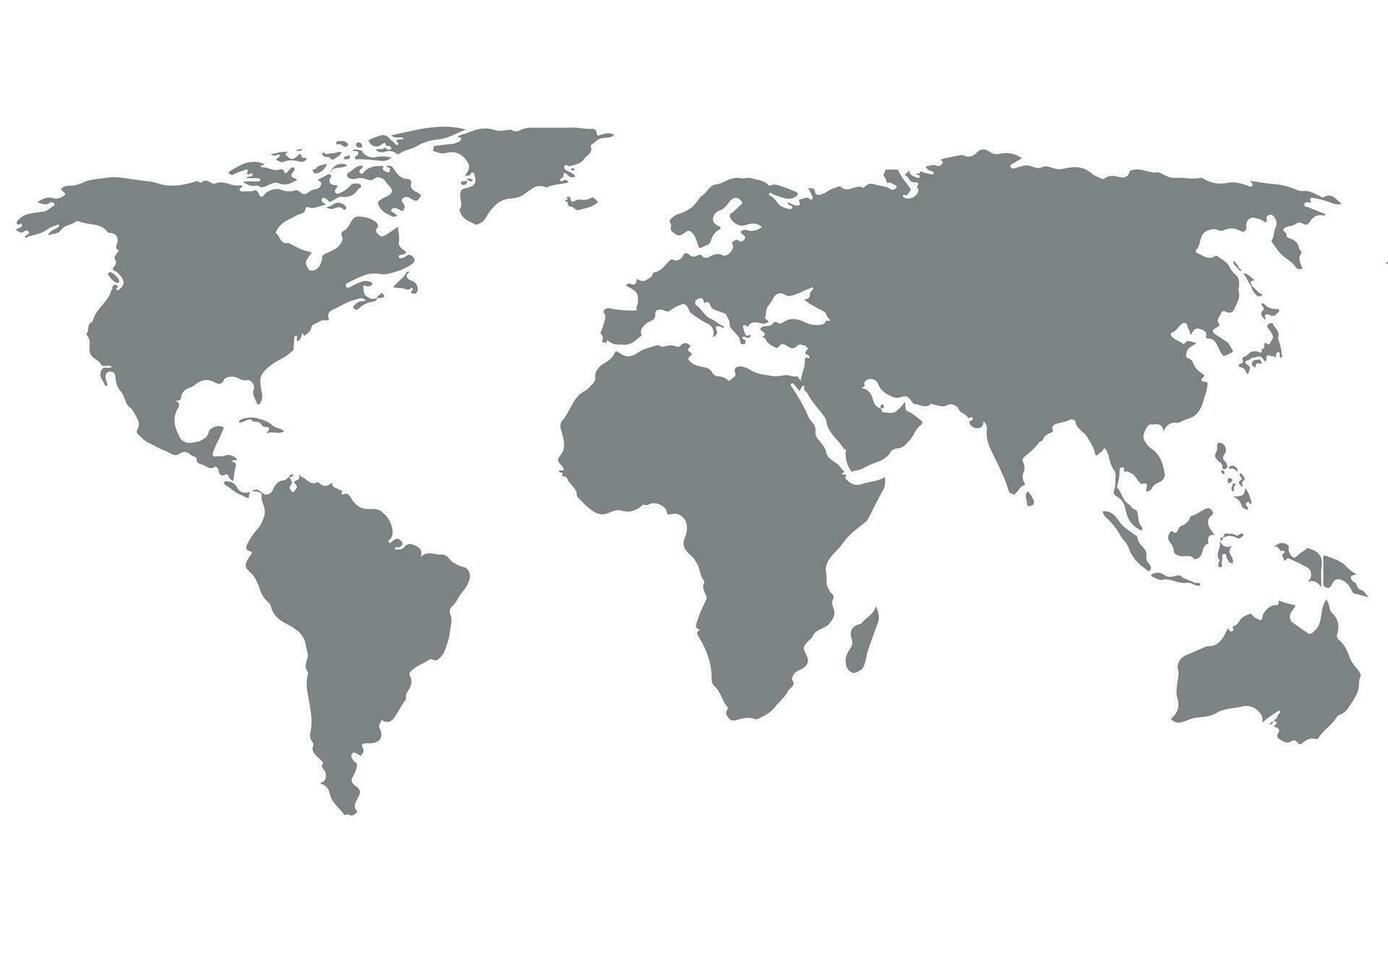 vetor do mapa do mundo, isolado no fundo branco. terra plana, modelo de mapa cinza para padrão de site da web, relatório anual, infográficos. globo ícone de mapa mundial semelhante. viajar em todo o mundo, mapa de fundo de silhueta.